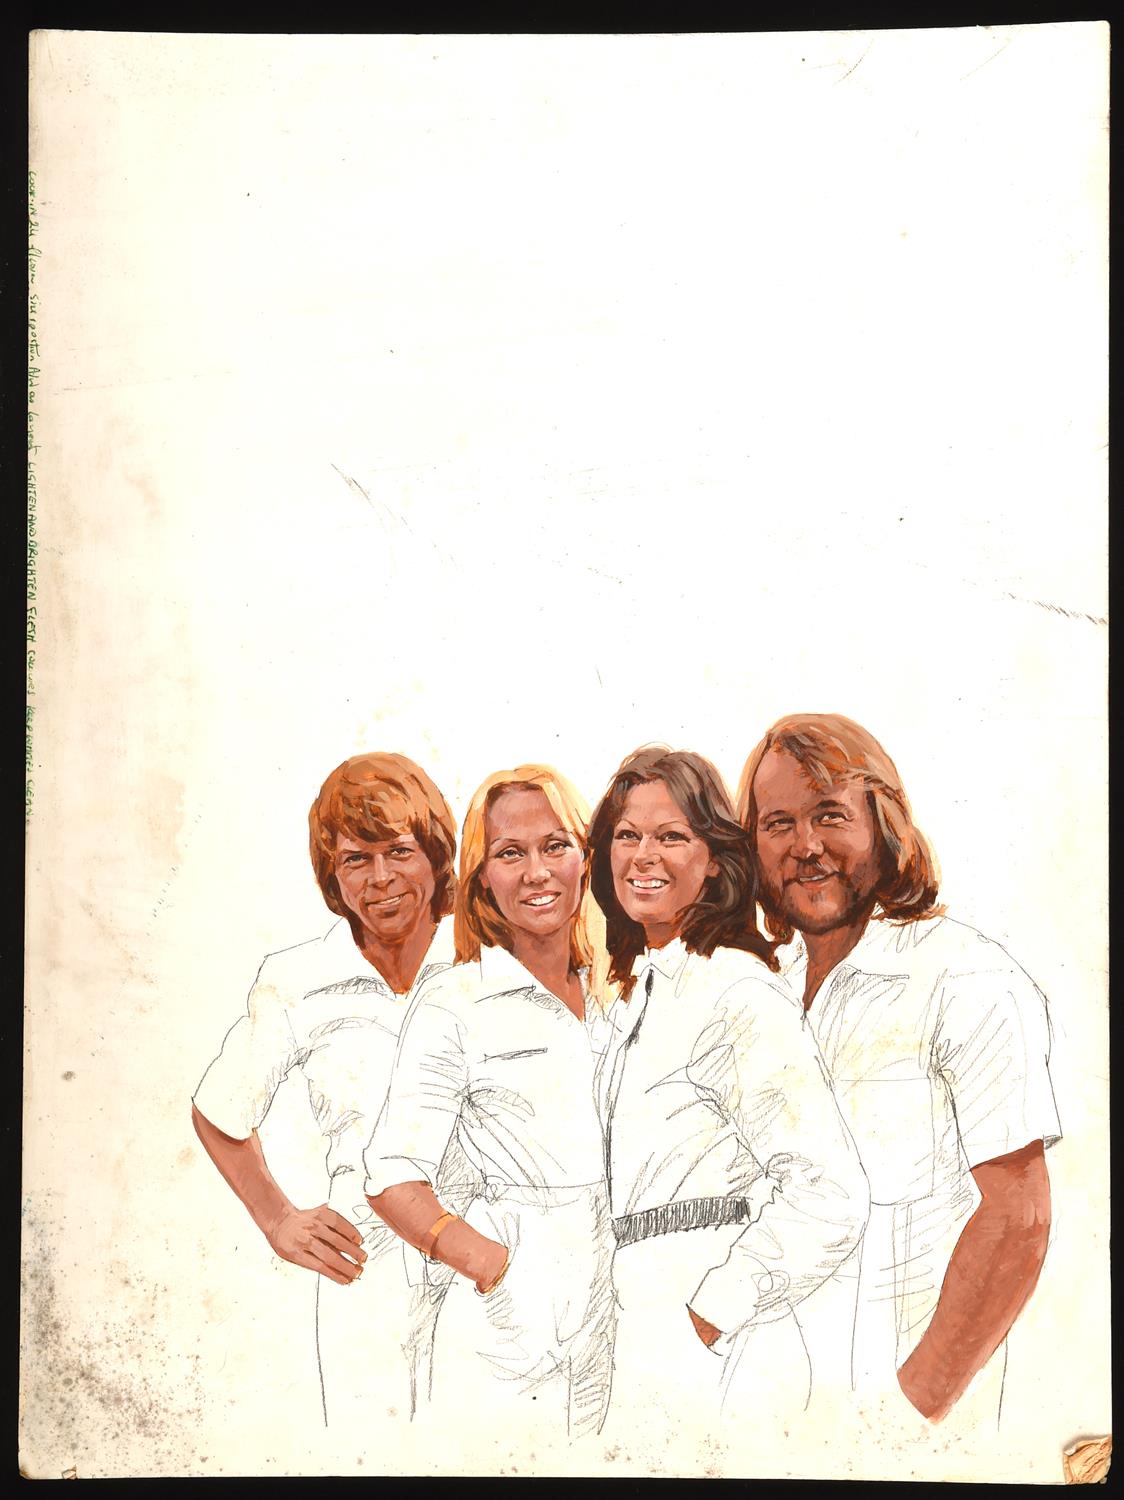 § Arnaldo Putzu (Italian 1927 -2012), Original artwork of ABBA for Look-In magazine Vol 7 Issue 28